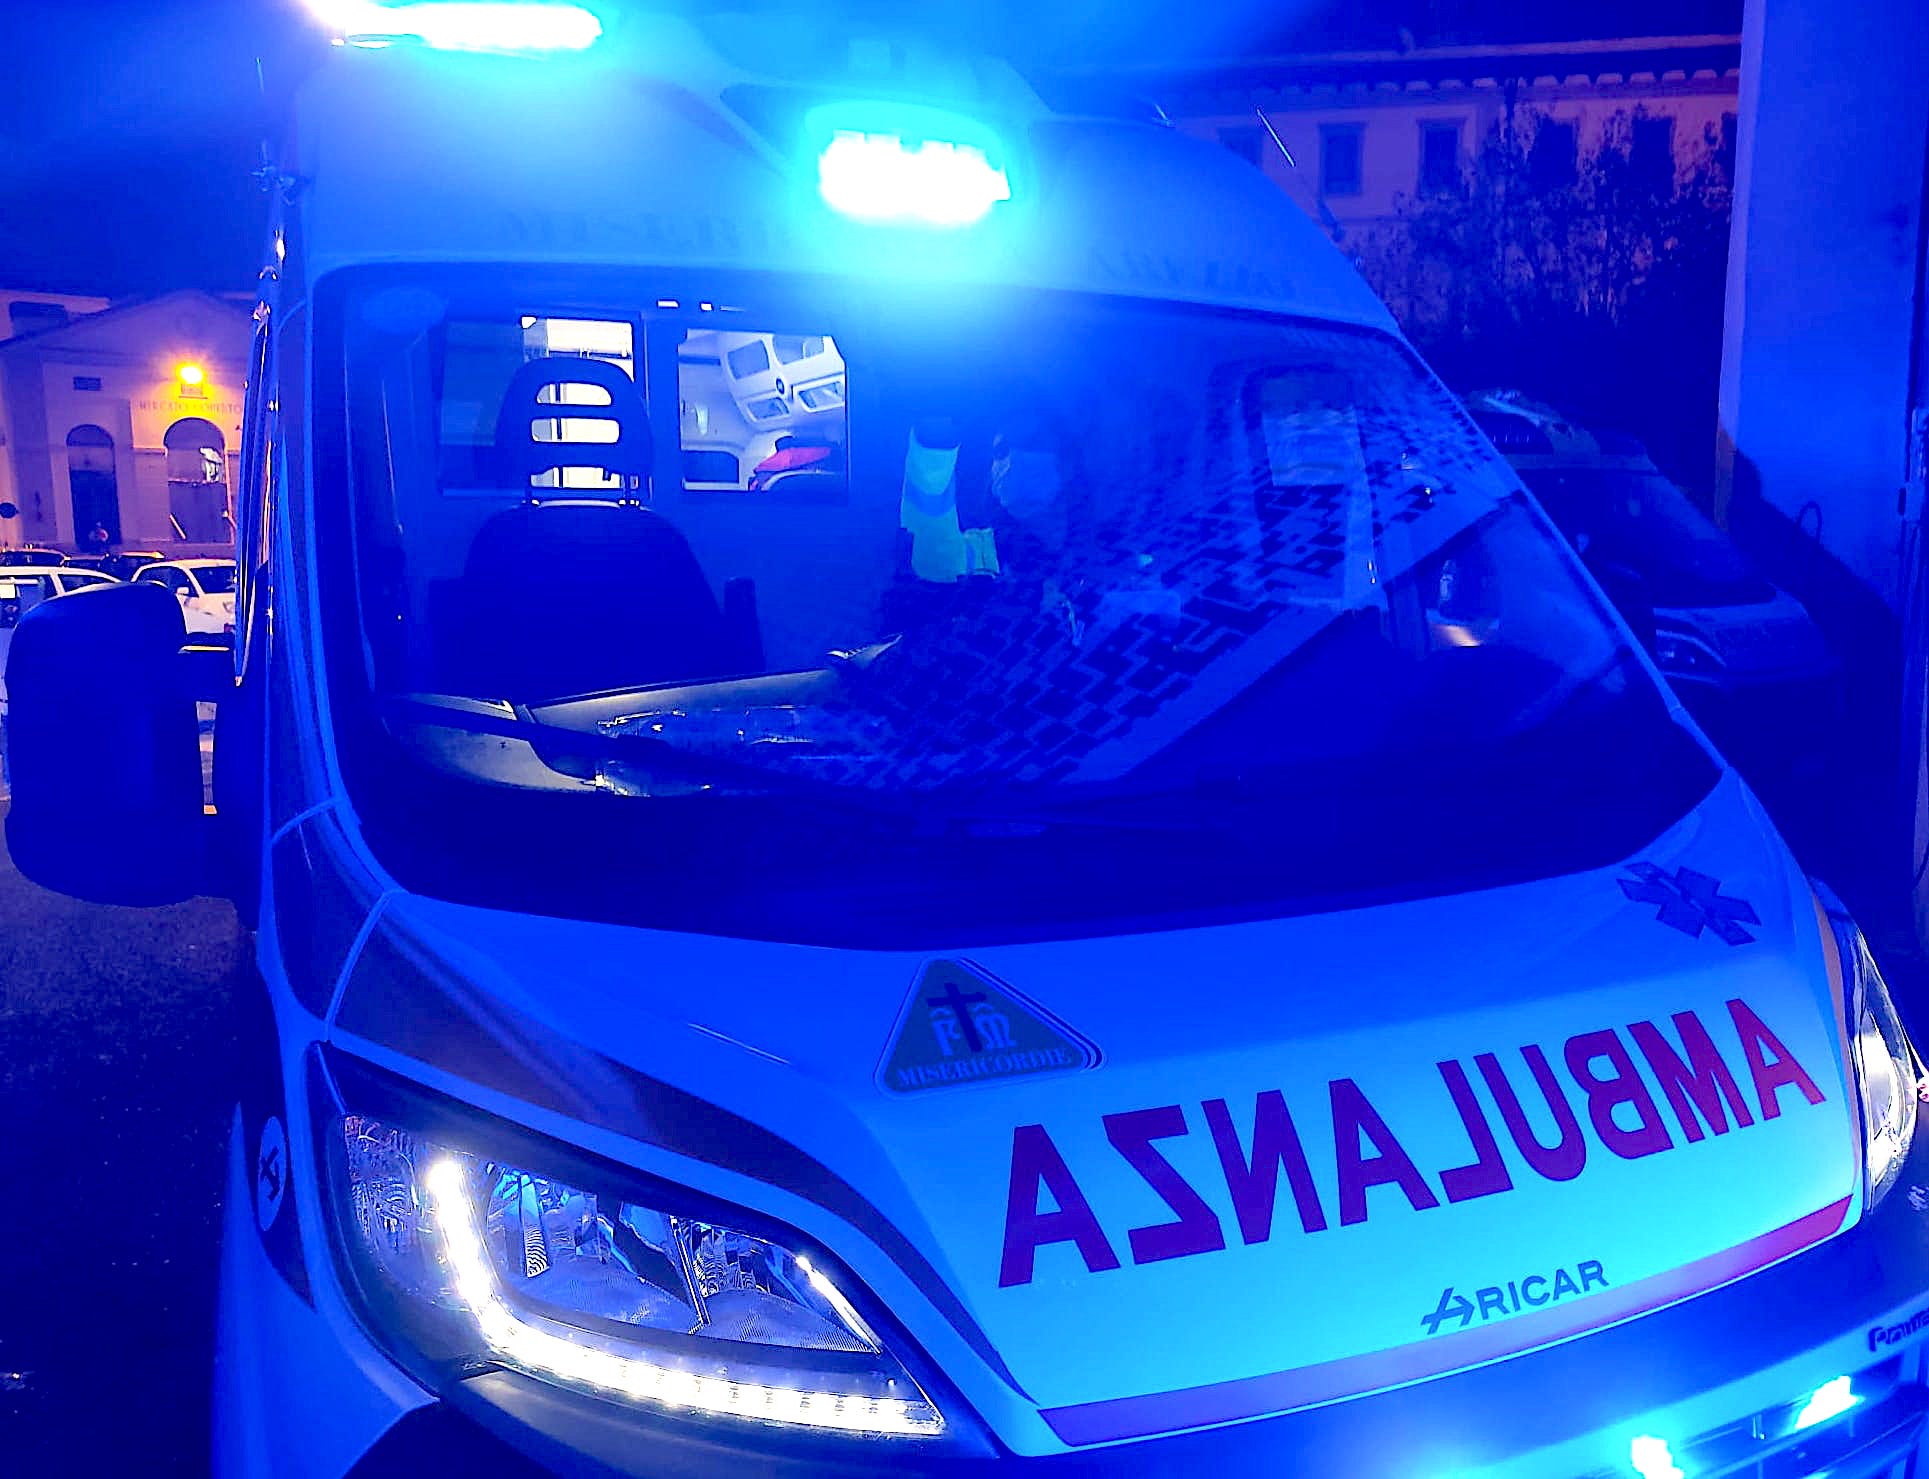 Violento accoltellamento di fronte alla stazione di Arezzo, grave un 28enne